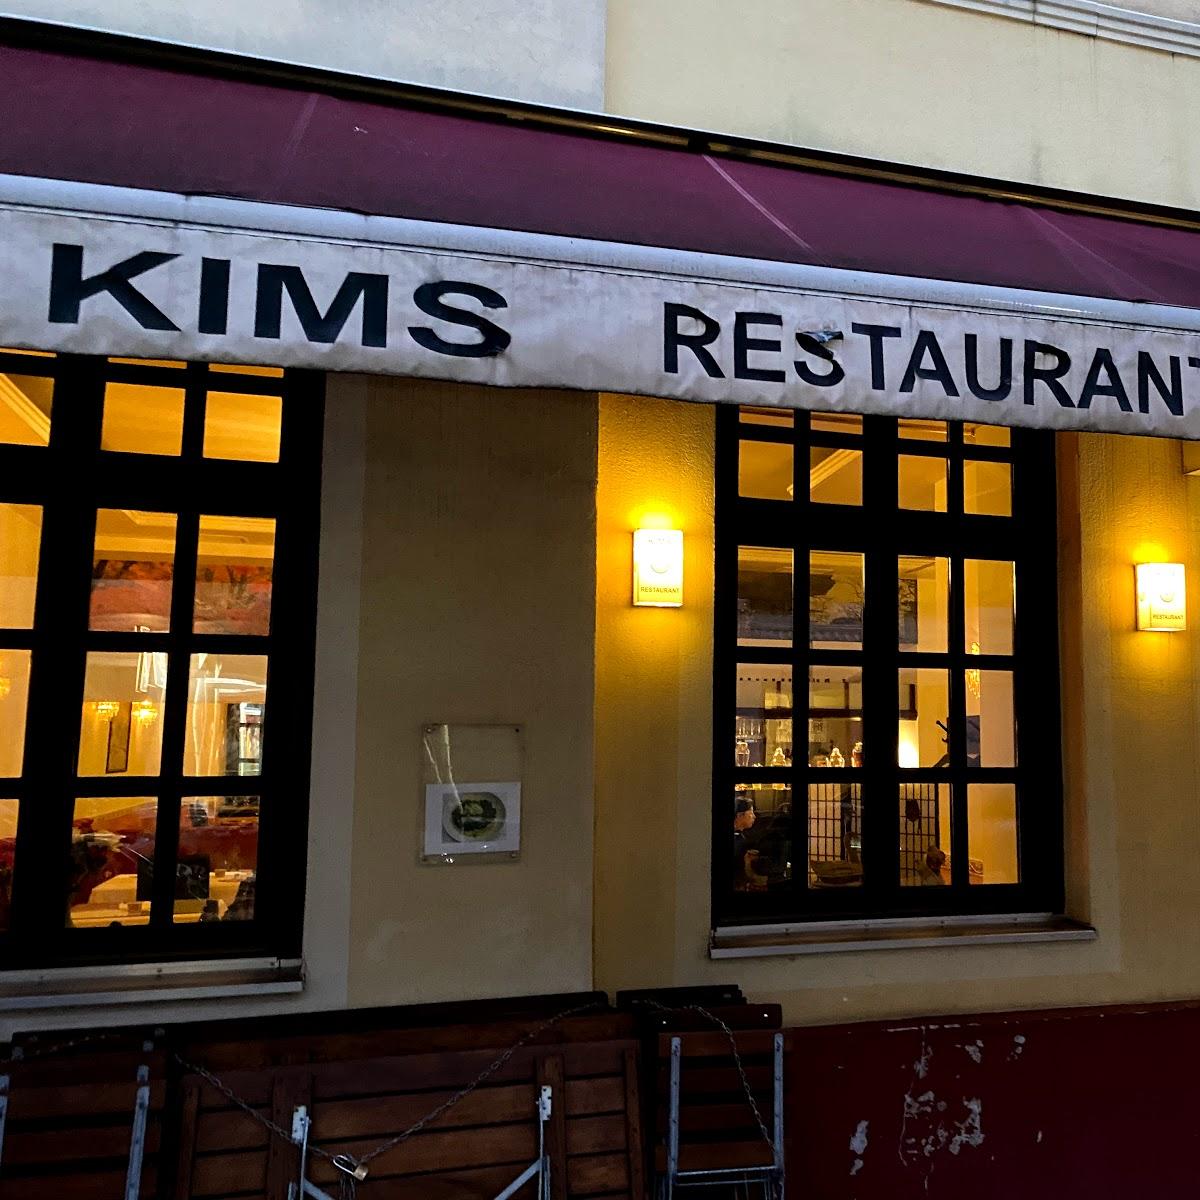 Restaurant "Kims Restaurant" in München